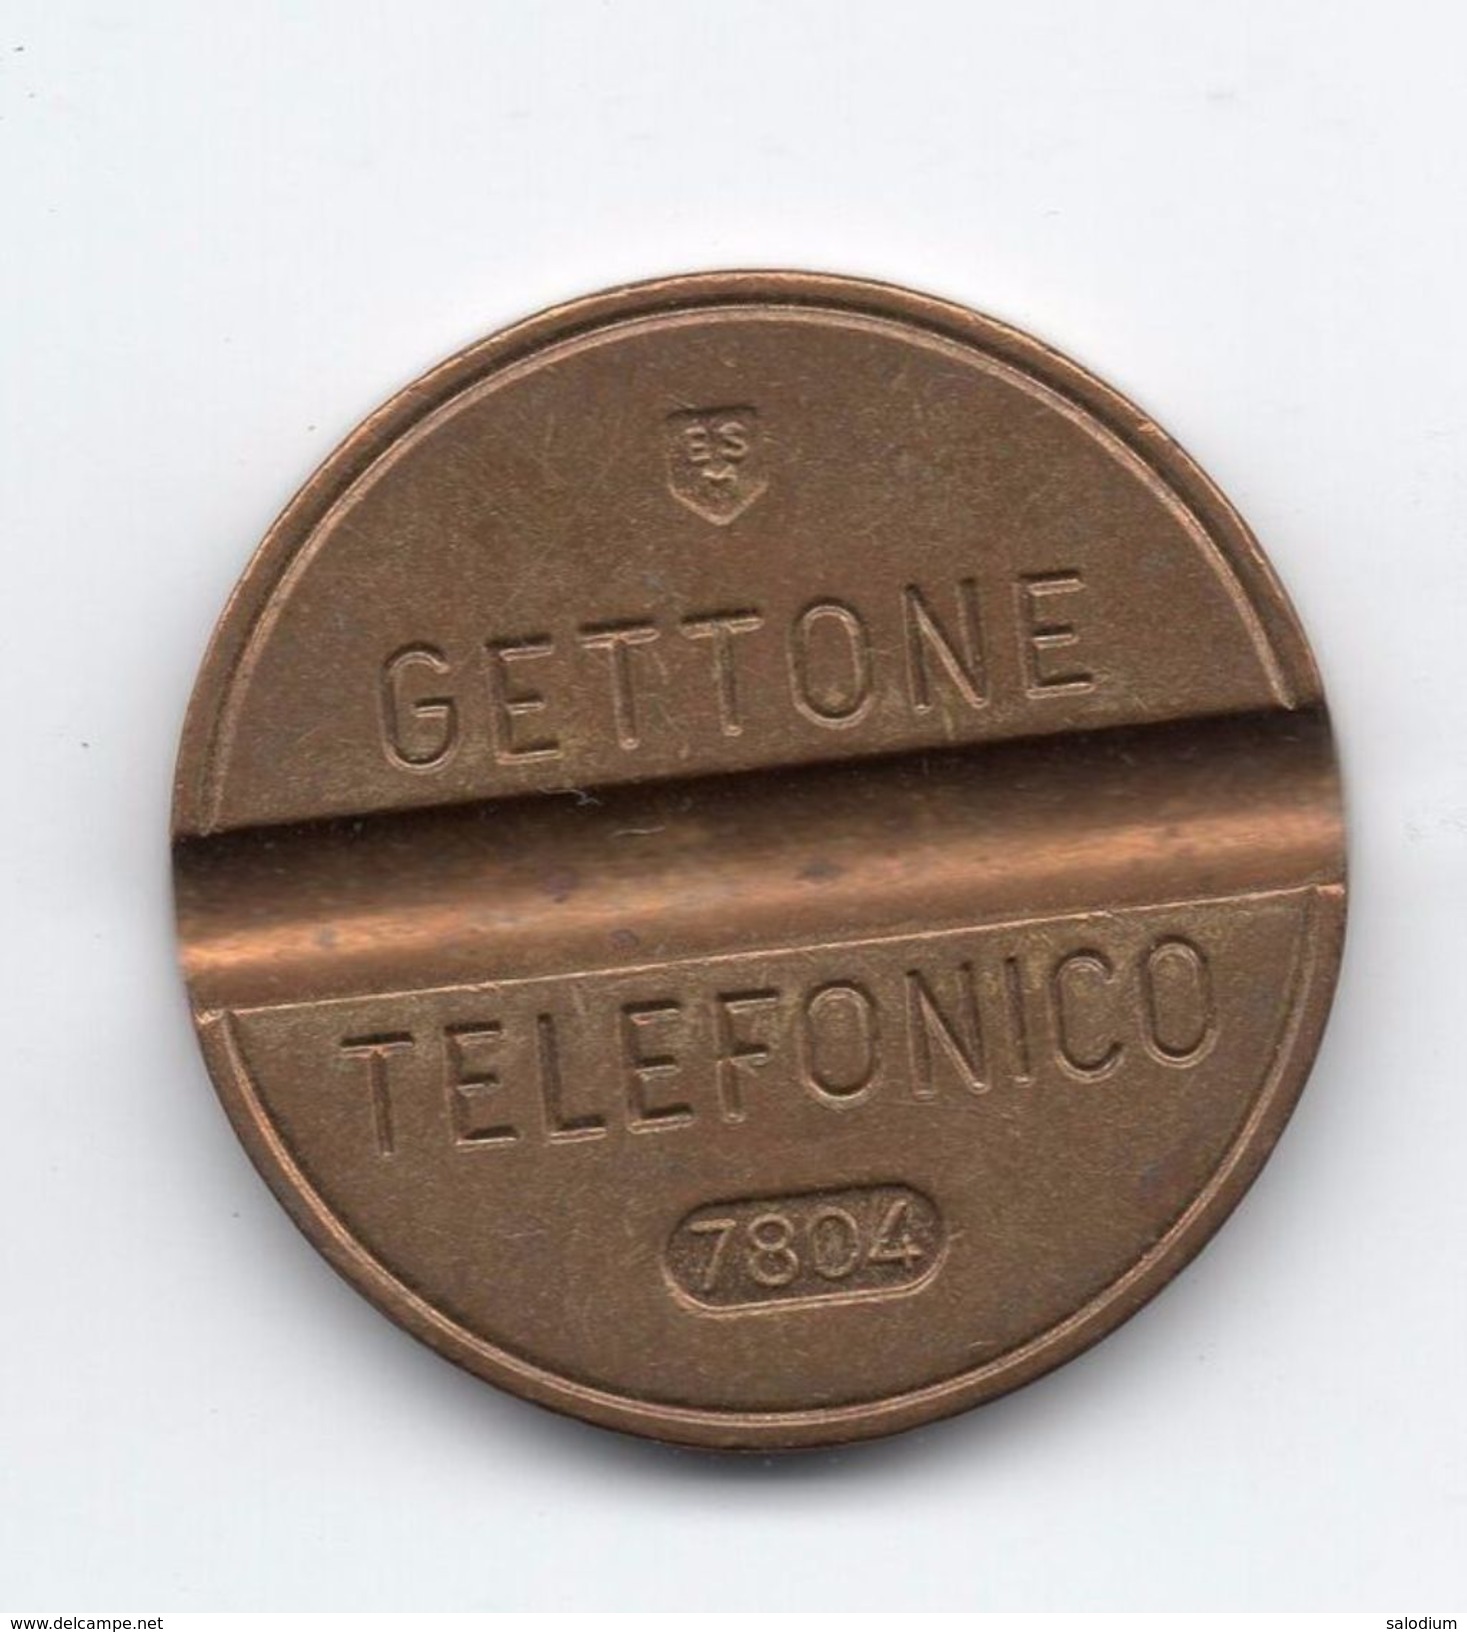 Gettone Telefonico 7804 Token Telephone - (Id-762) - Professionali/Di Società